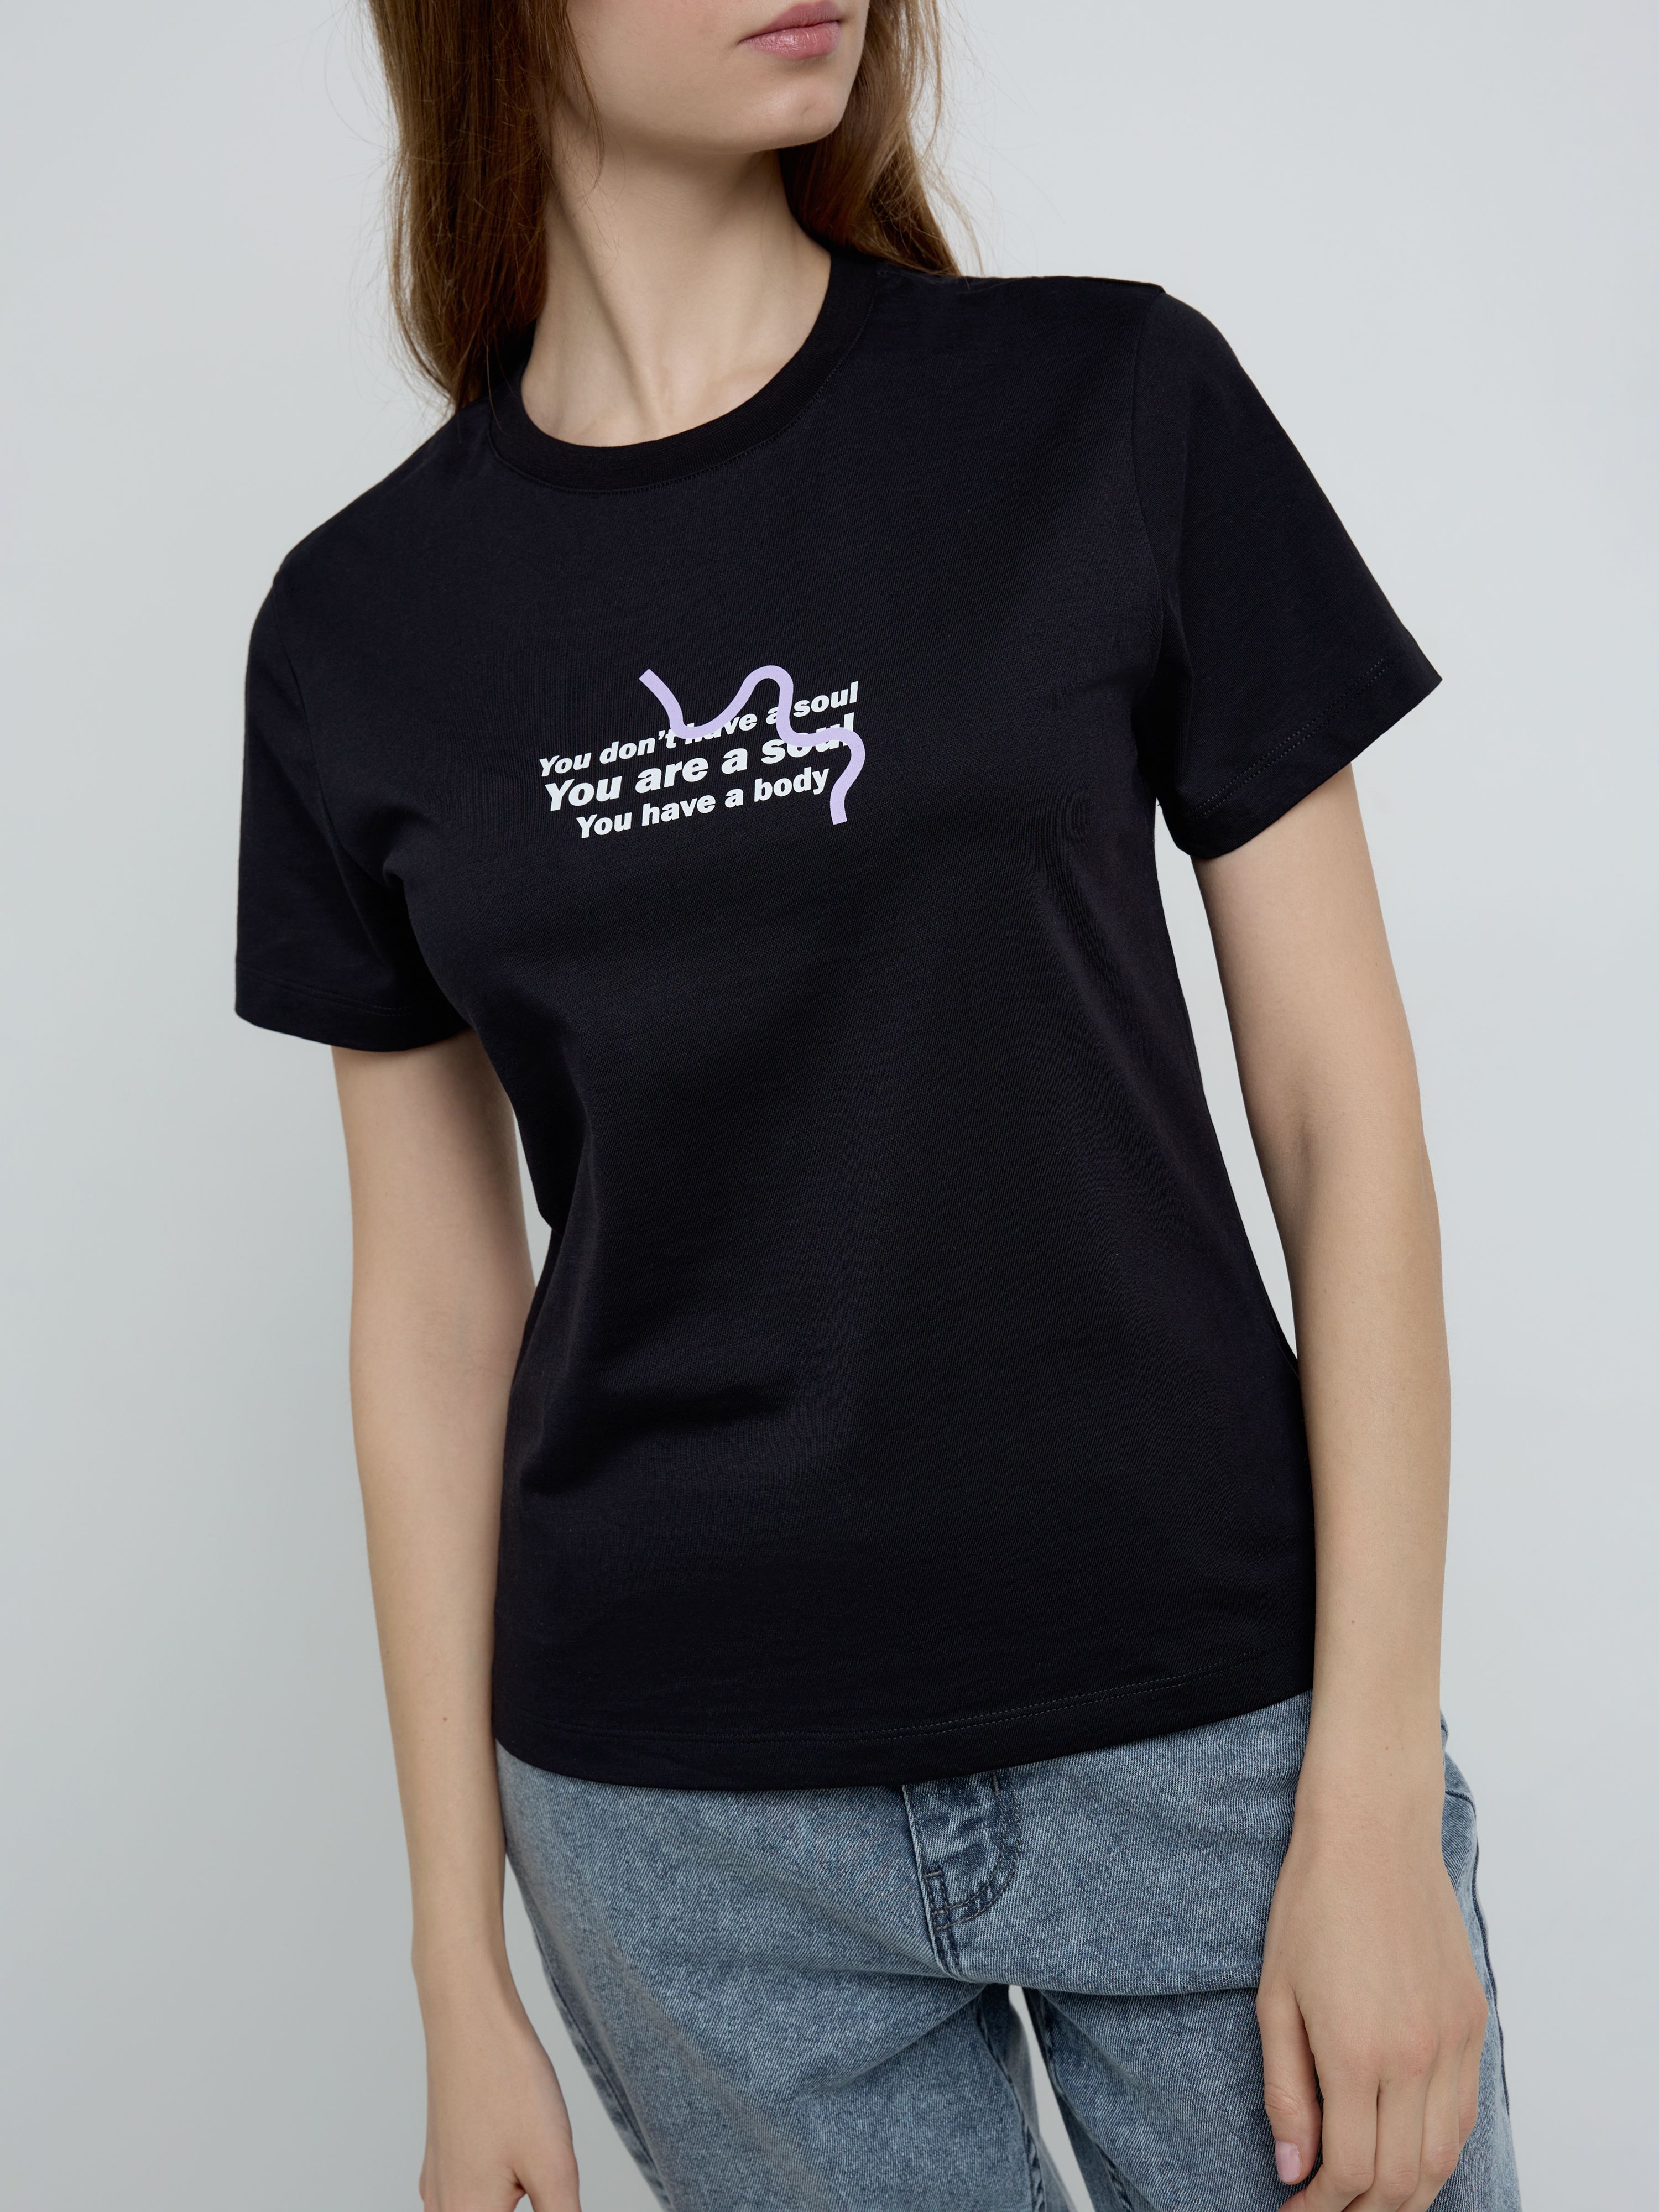 Базовая футболка из хлопка с рисунком «A soul» LD 2137 Conte ⭐️, цвет black, размер 170-100/xl - фото 1